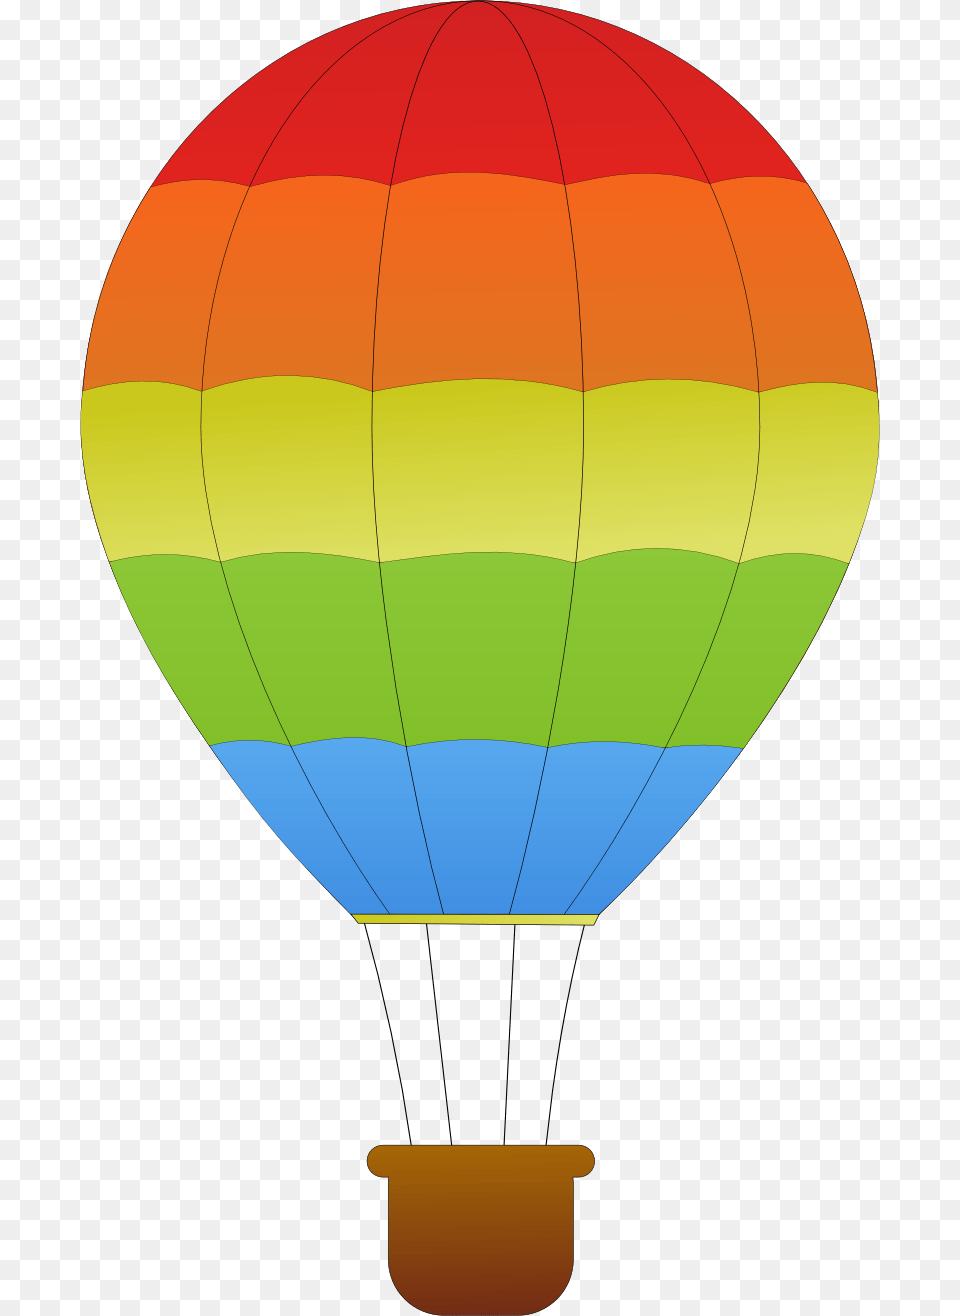 Free Of Air Balloon Icon Clipart Hot Air Balloon Basket, Aircraft, Hot Air Balloon, Transportation, Vehicle Png Image